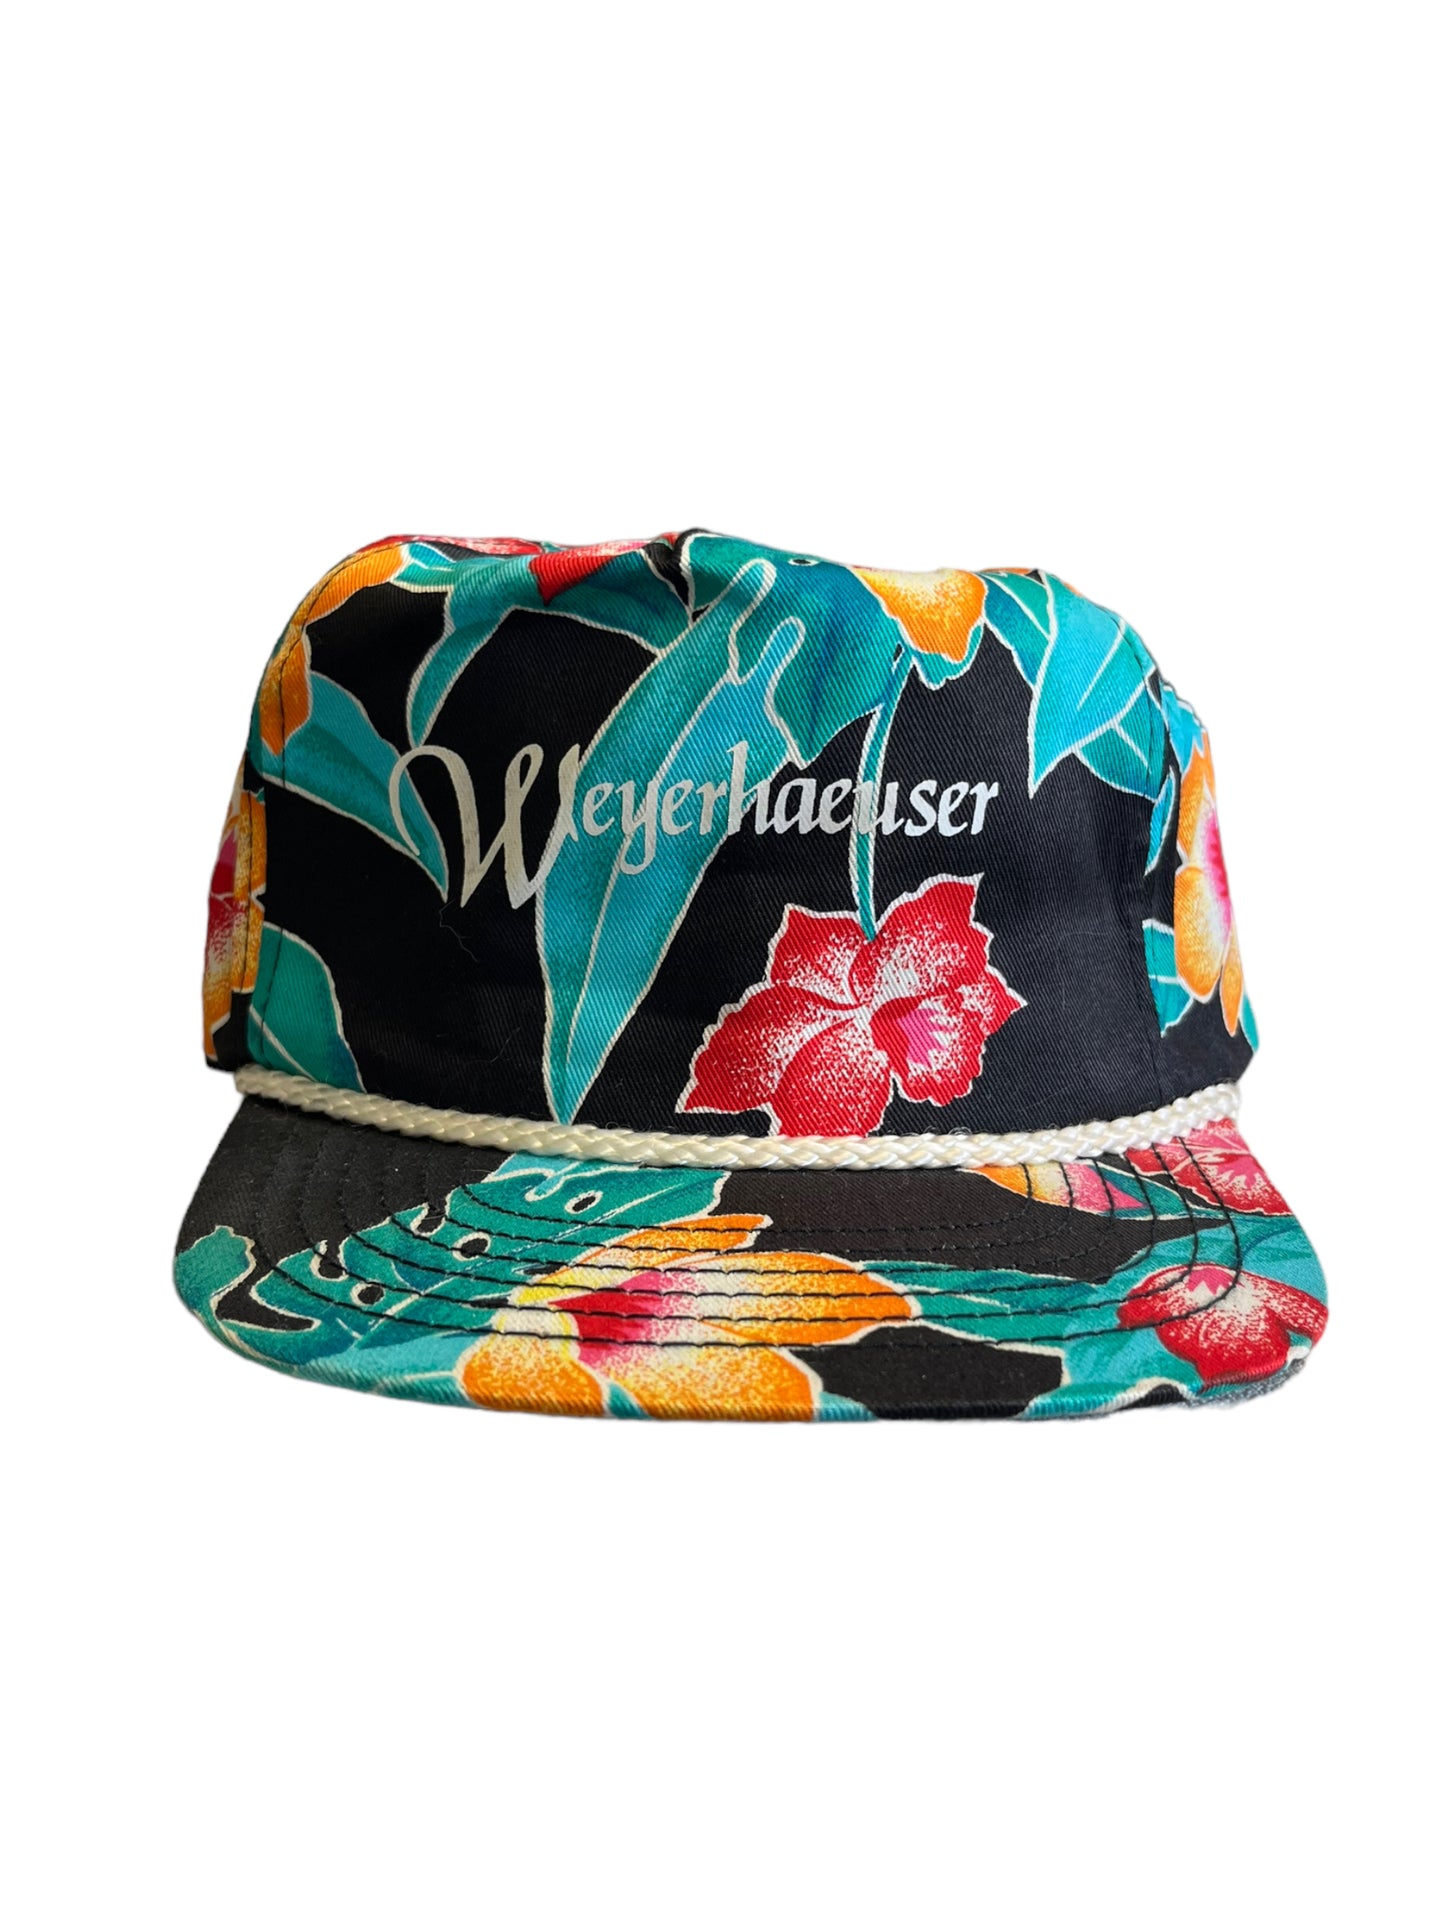 Vintage Weyerhaeuser Floral SnapBack Hat Brand New m